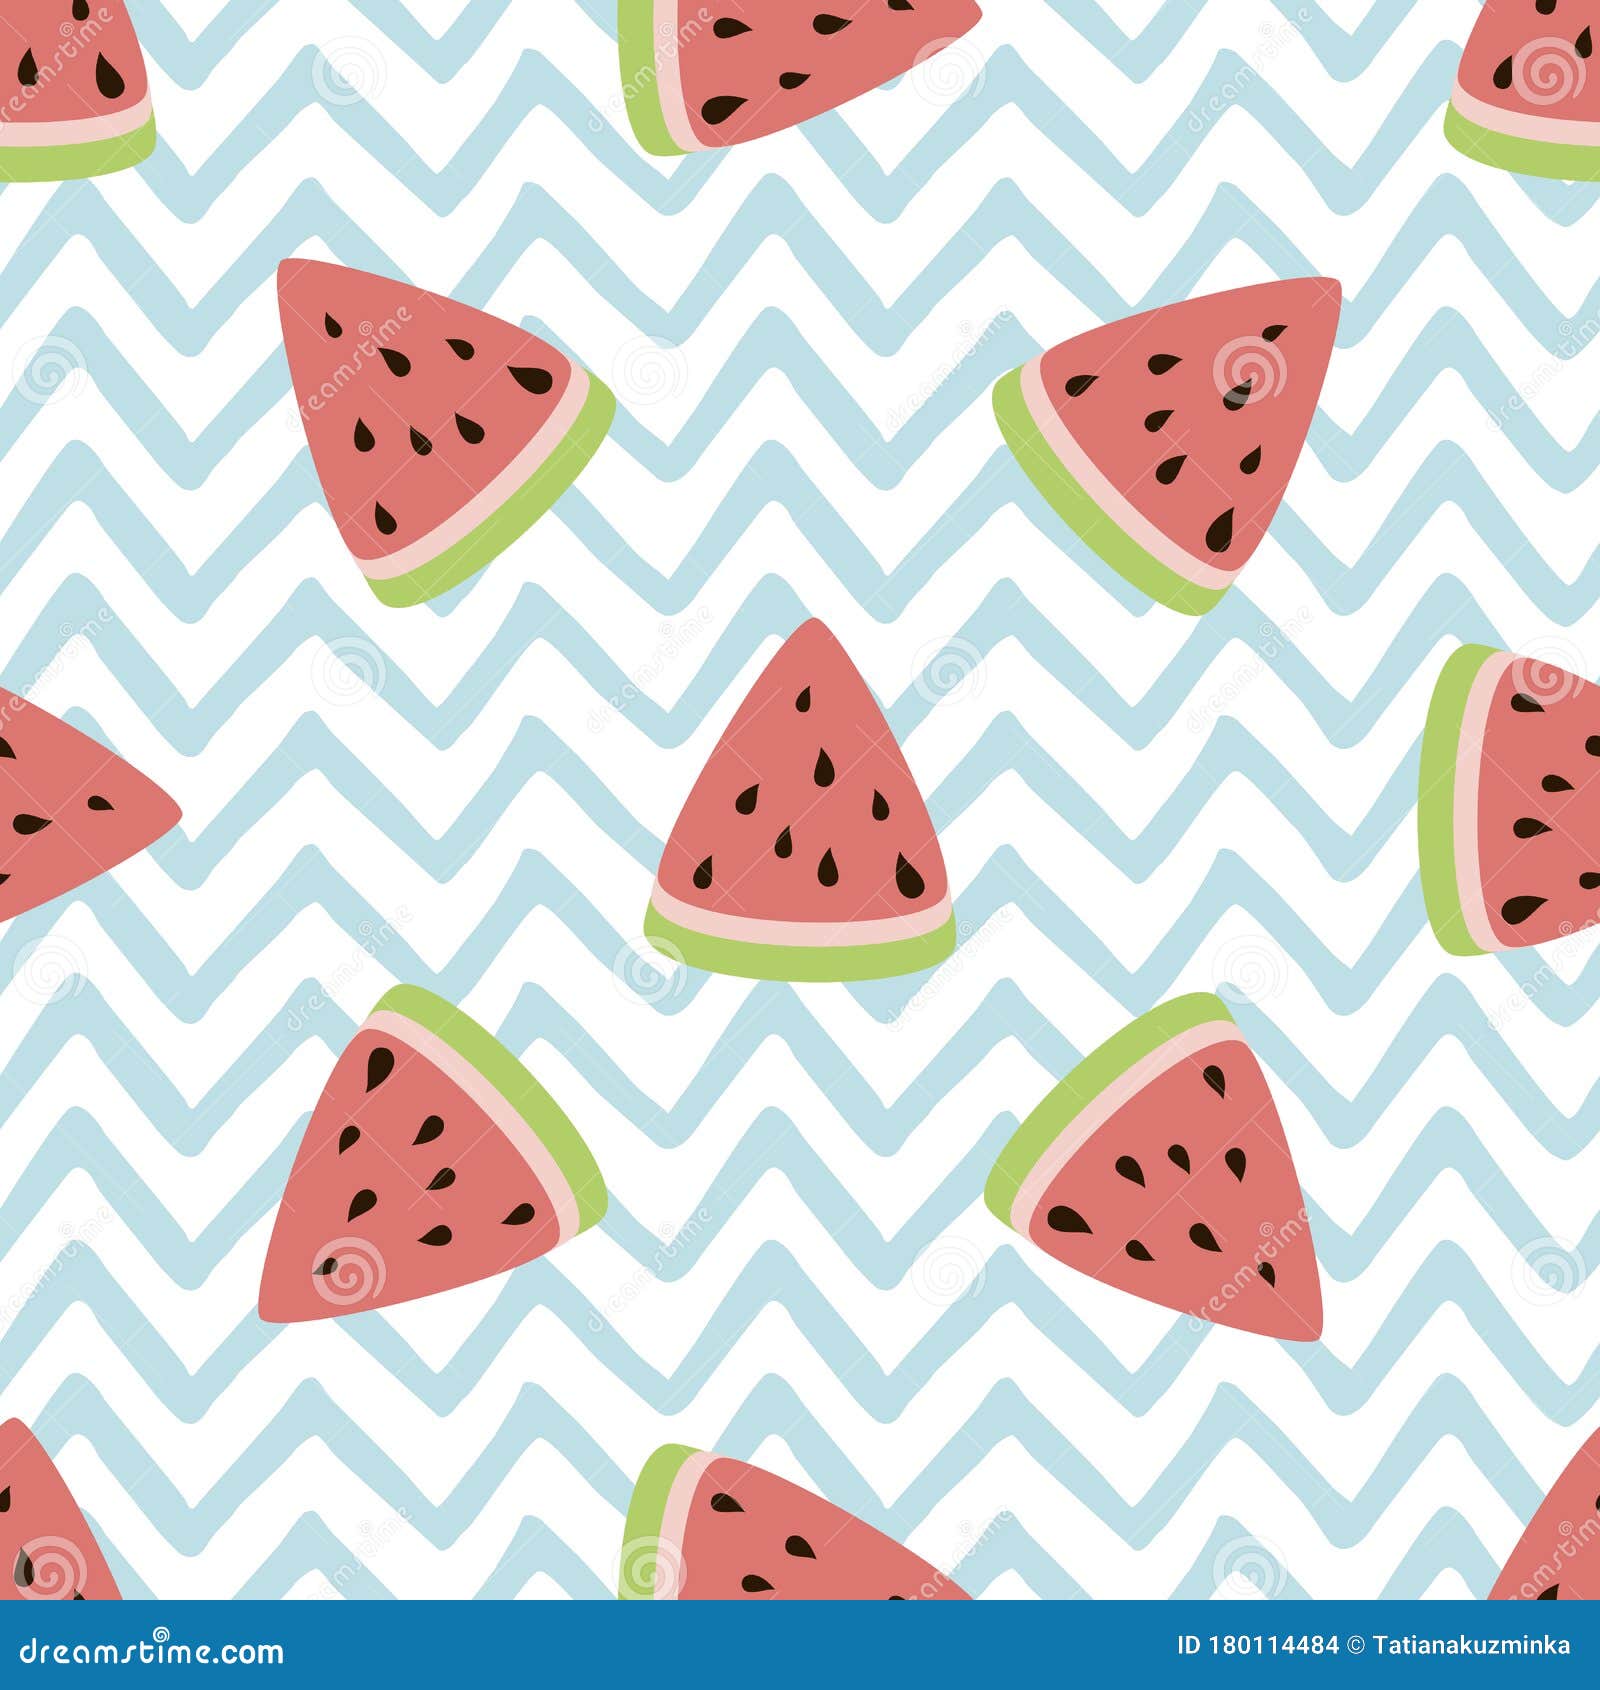 Cute Wallpaper Watermelon gambar ke 13